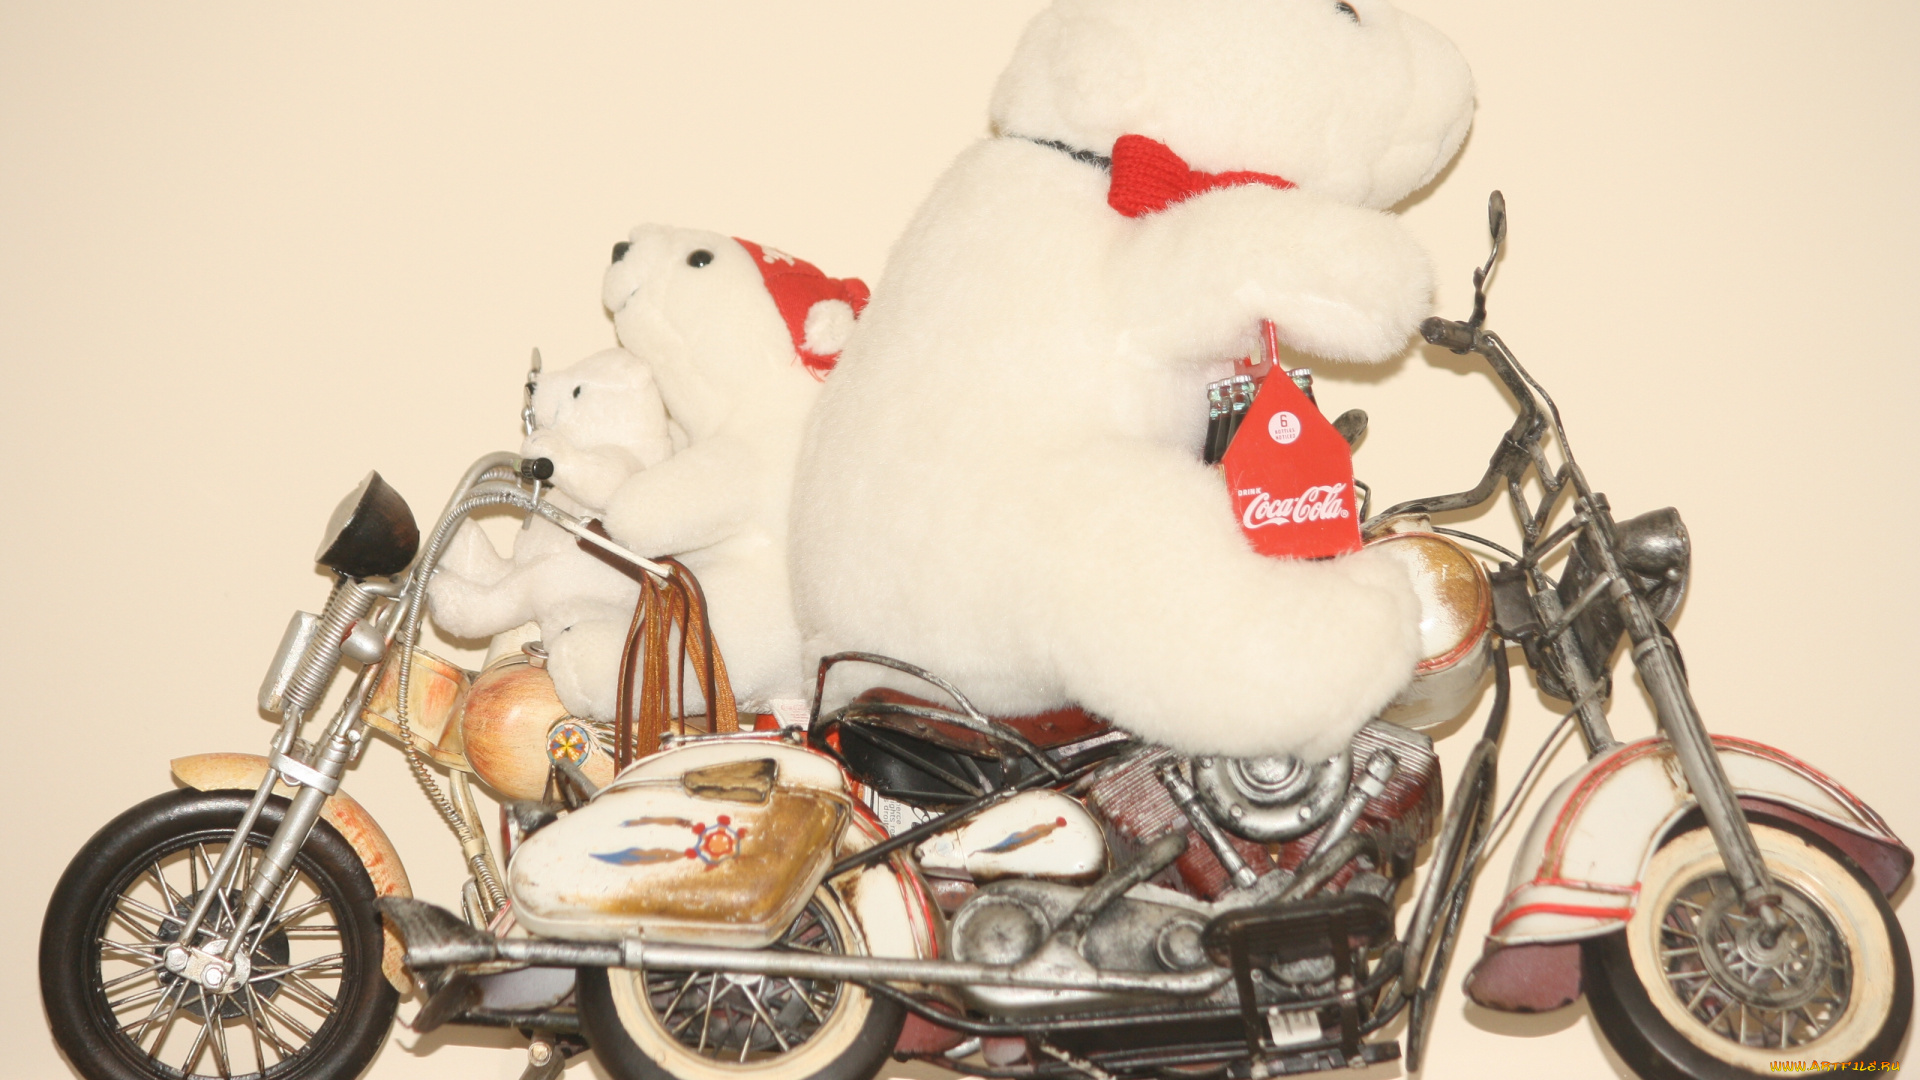 разное, игрушки, coca-cola, плюшевый, медведь, мотоцикл